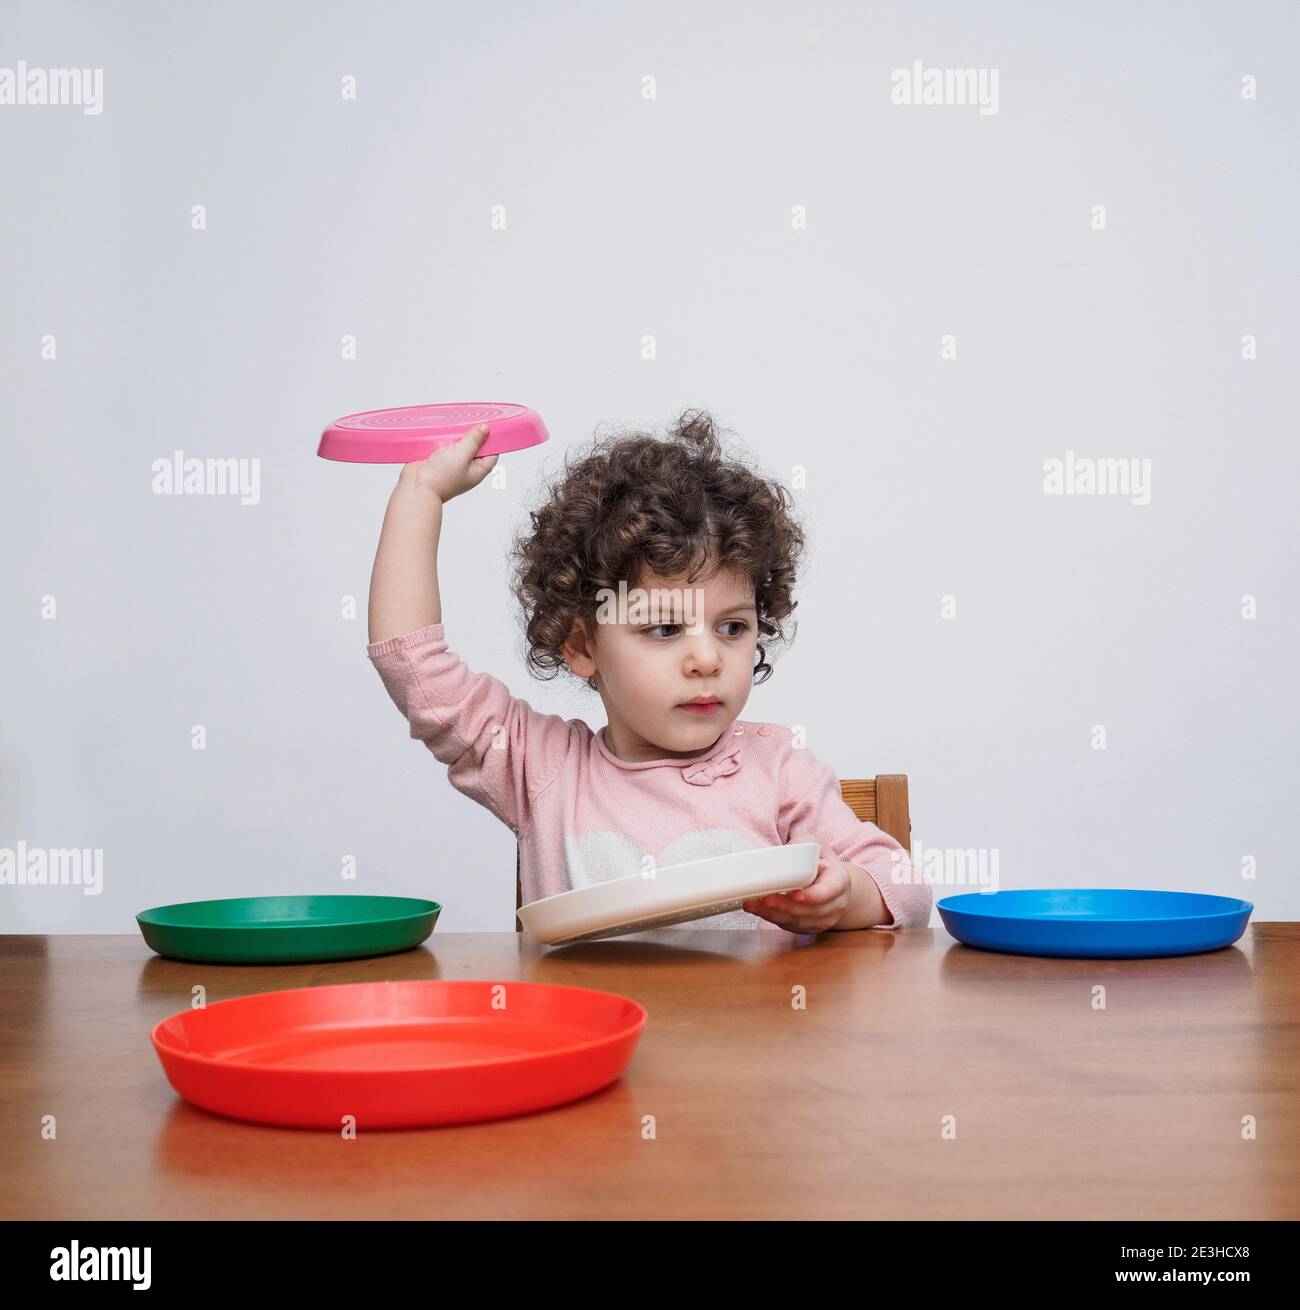 Spielzeug plastikbecher -Fotos und -Bildmaterial in hoher Auflösung – Alamy